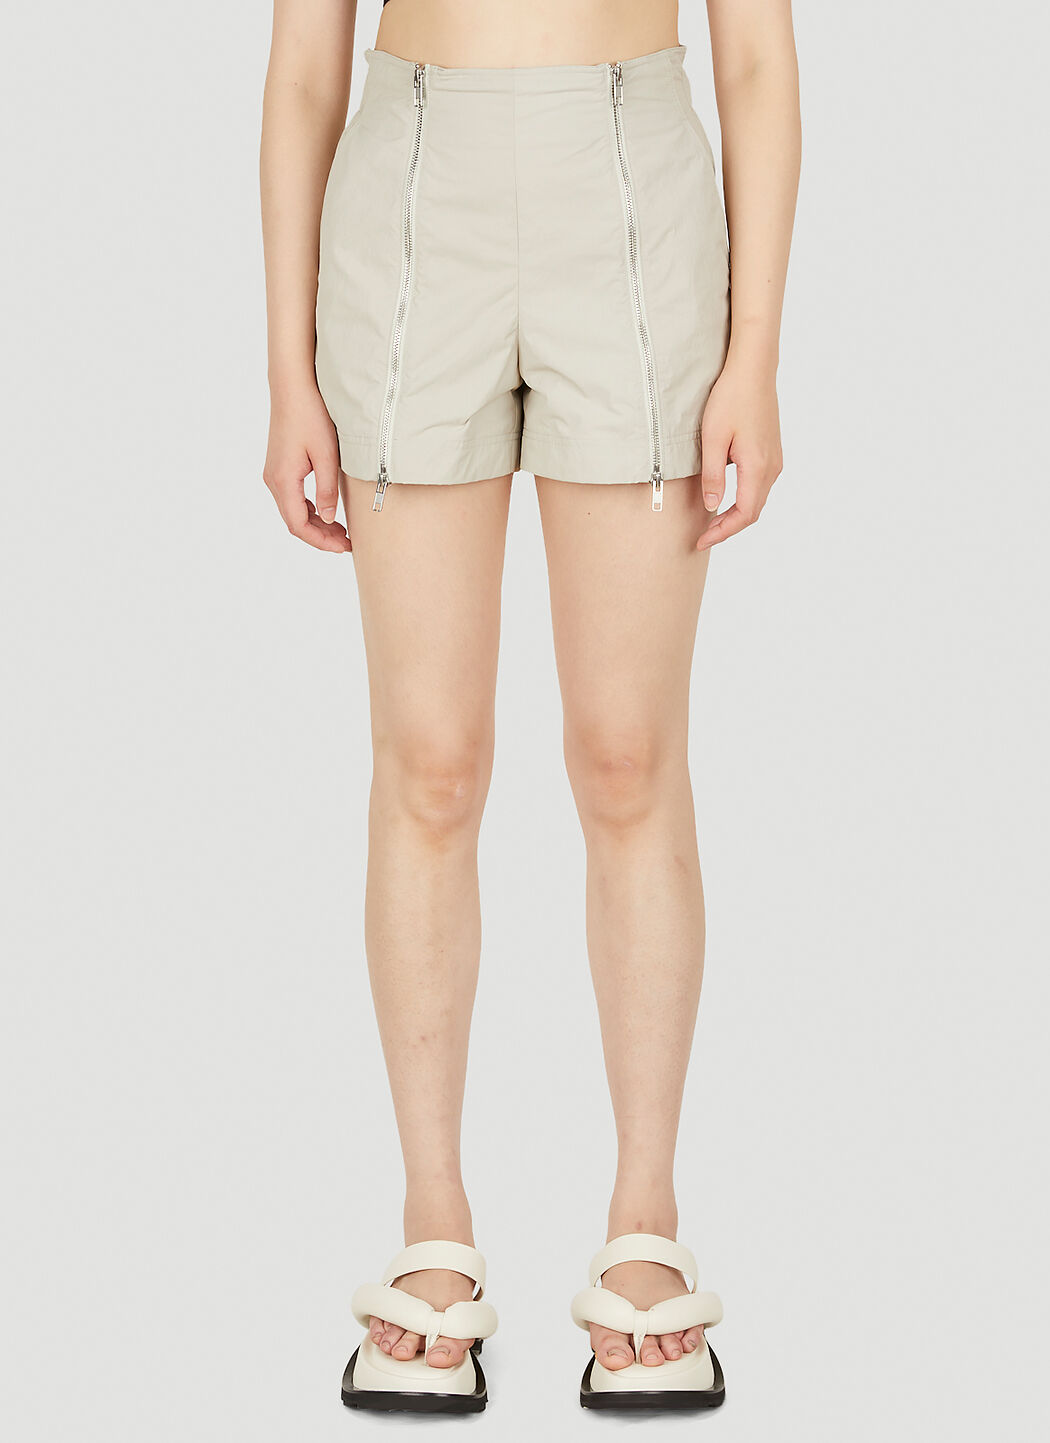 Balmain Zip Front Shorts Grey bln0253009